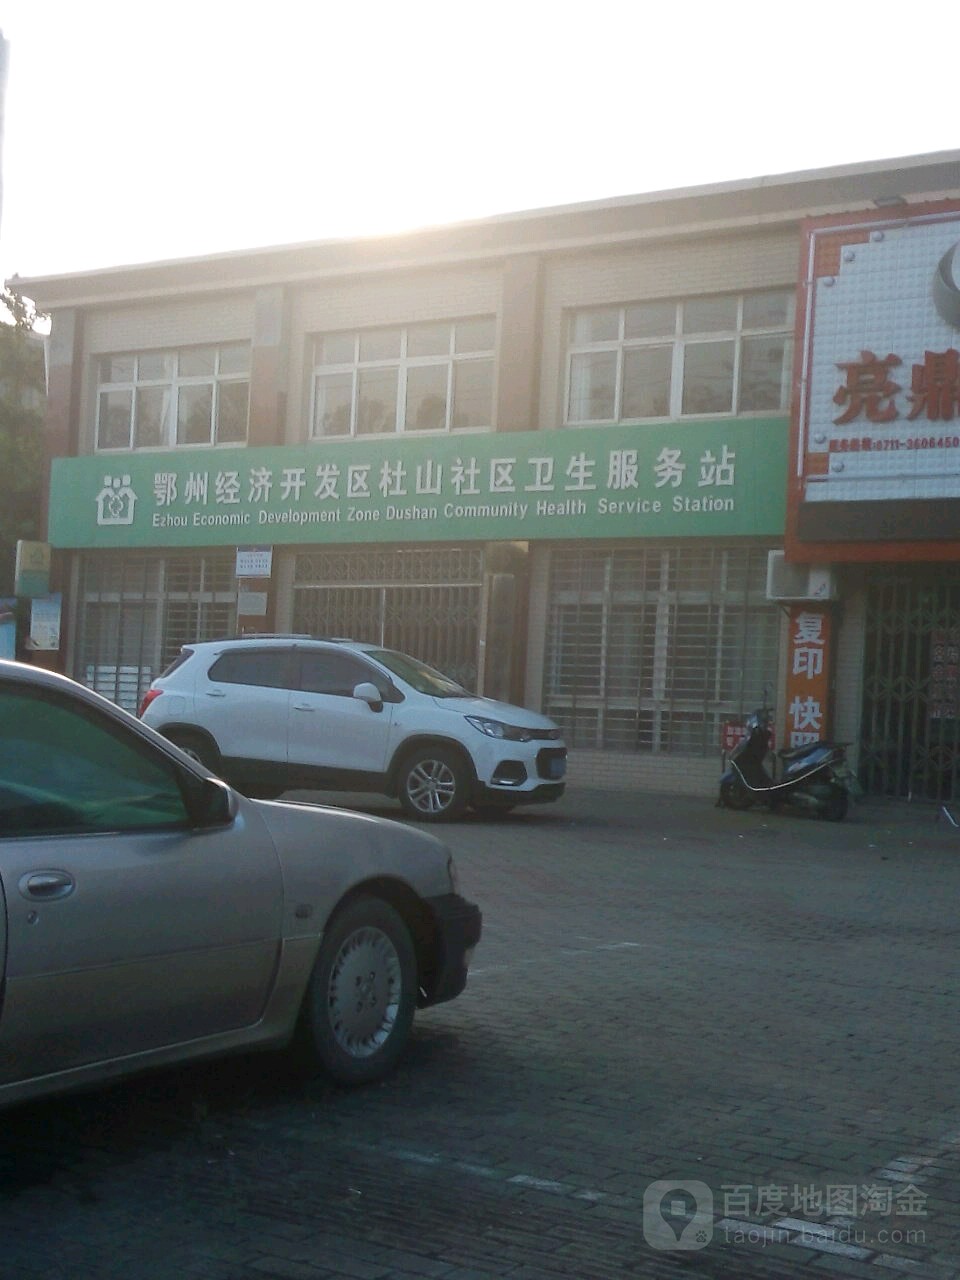 鄂州经济开发区杜山社区卫生服务站